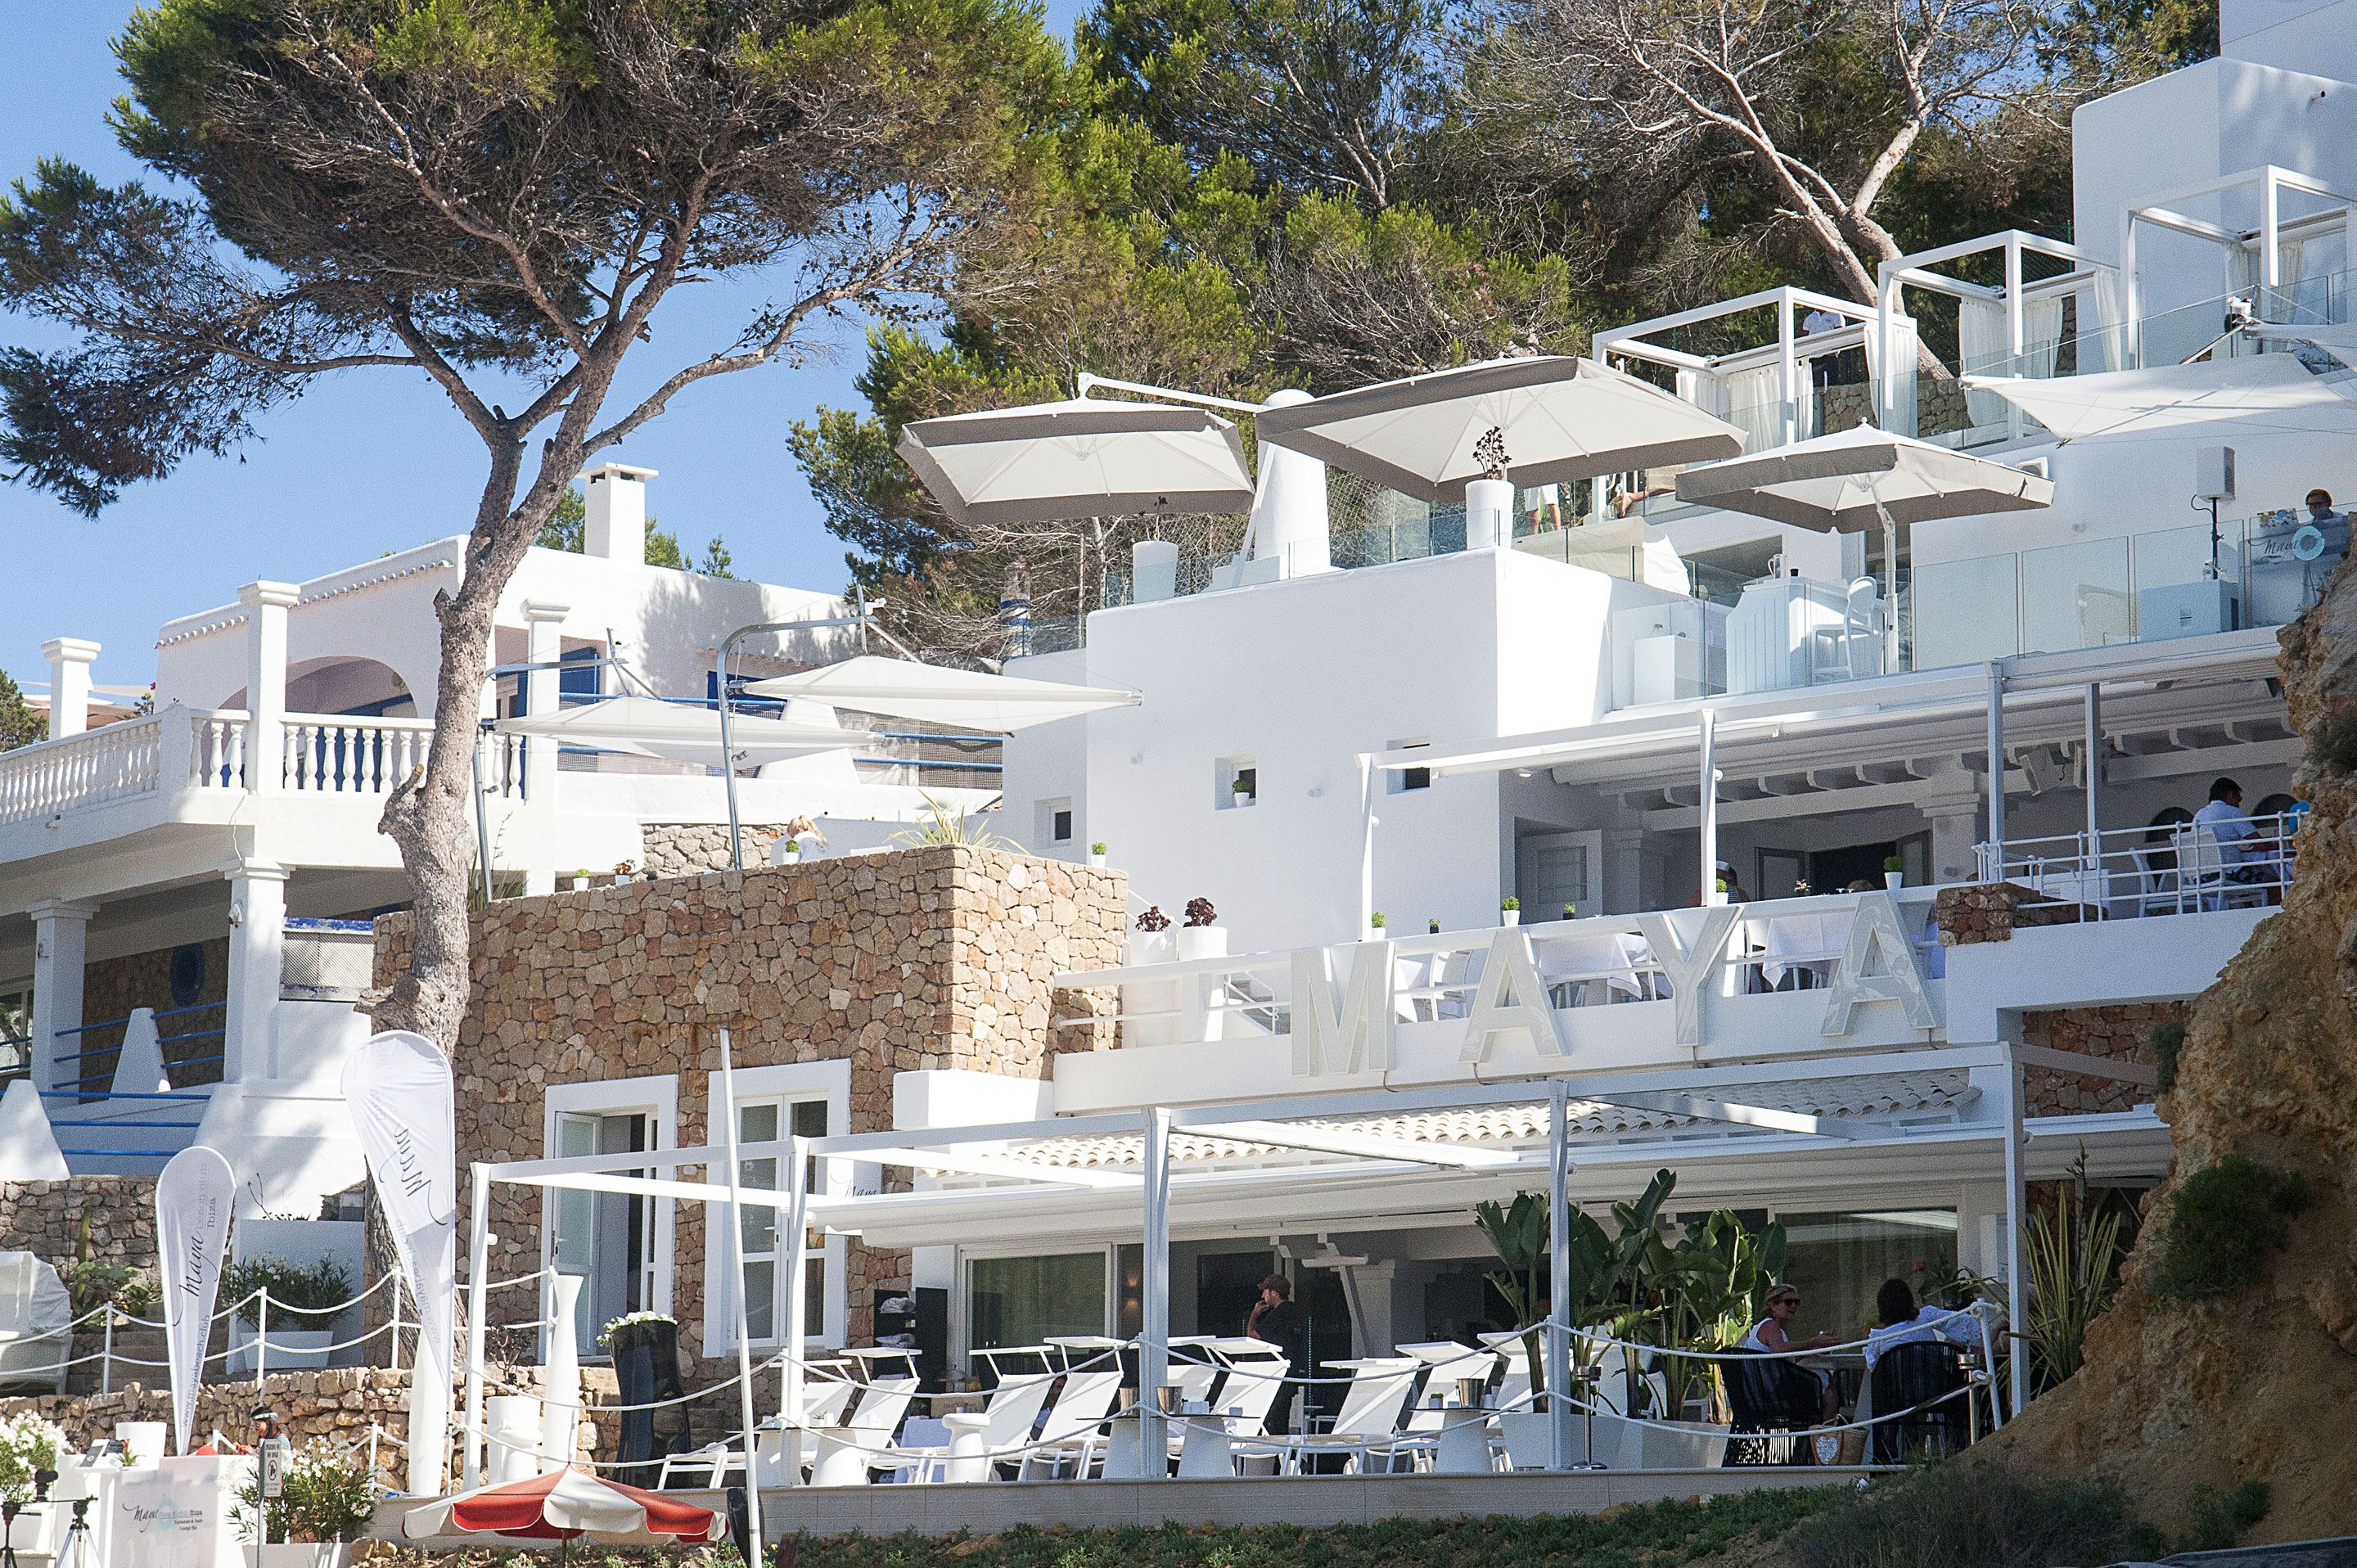 Maya Beach Club Ibiza Formentera Wedding House